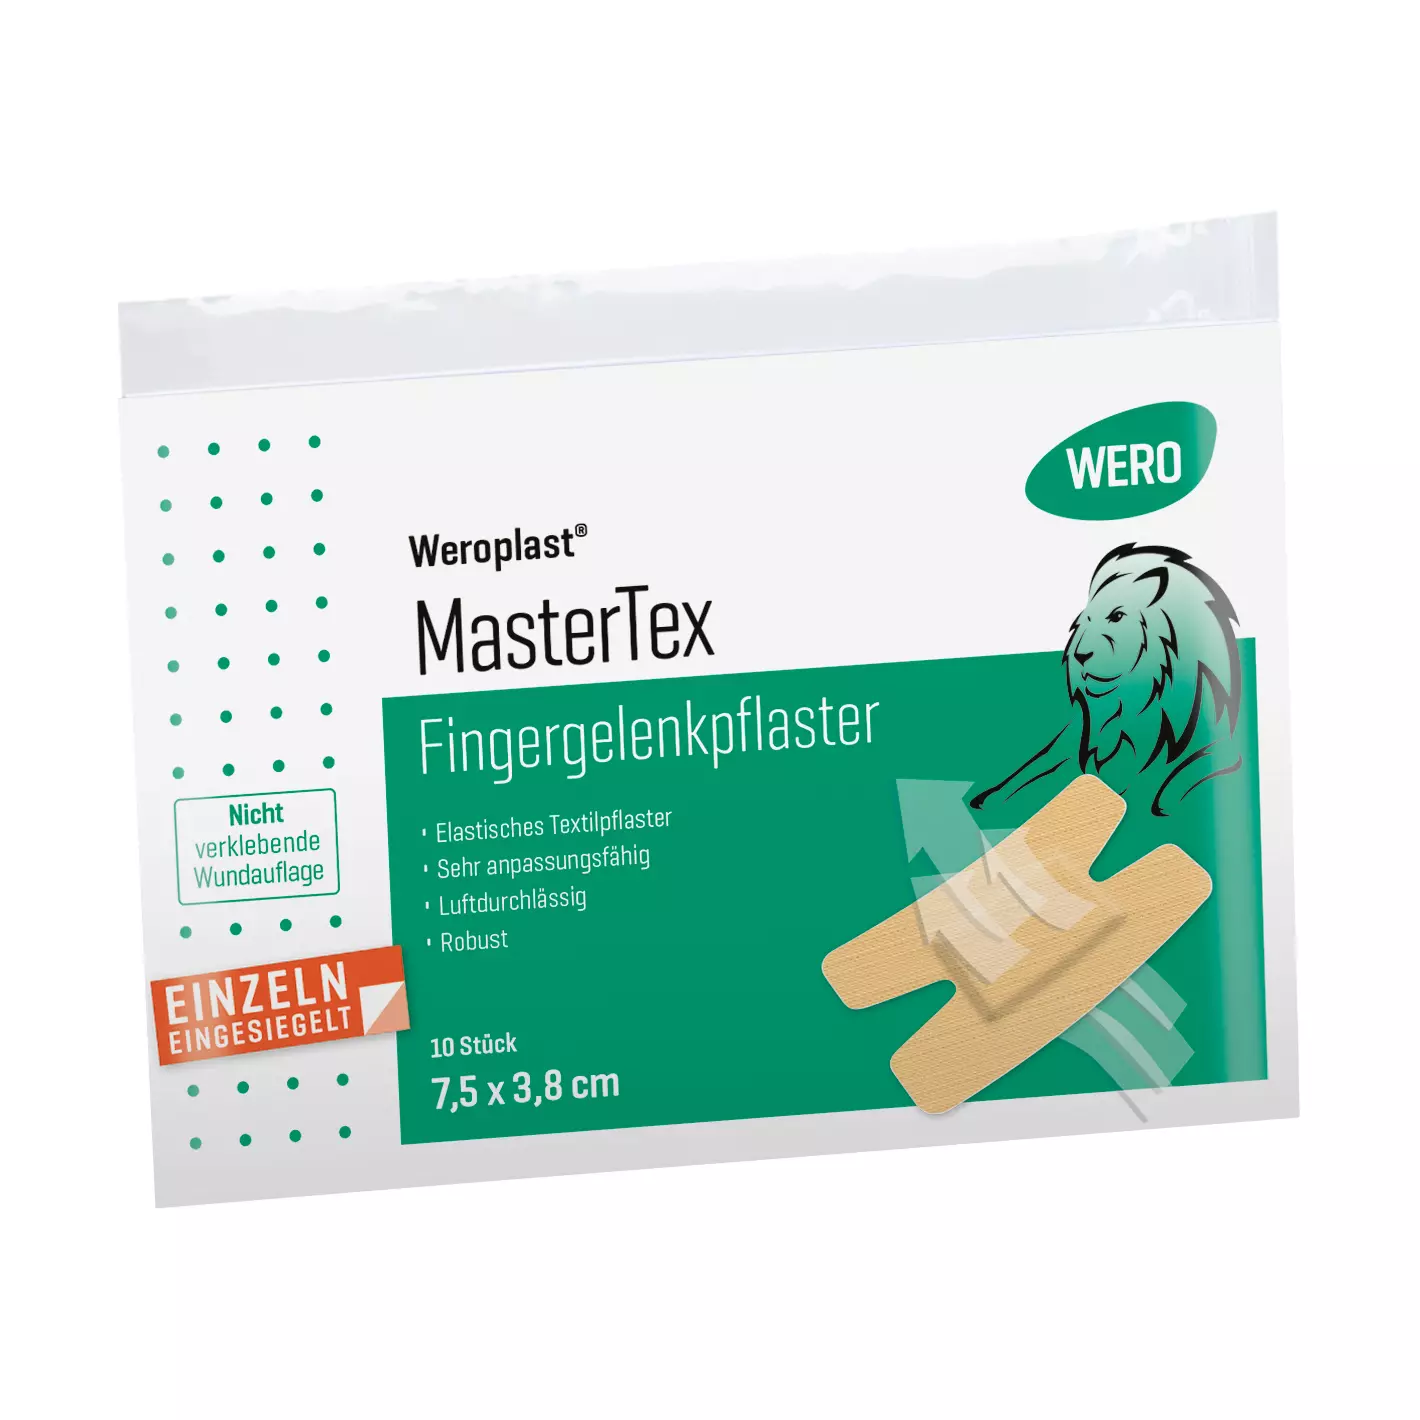 Fingergelenkpflaster Weroplast® MasterTex - 10 Stk